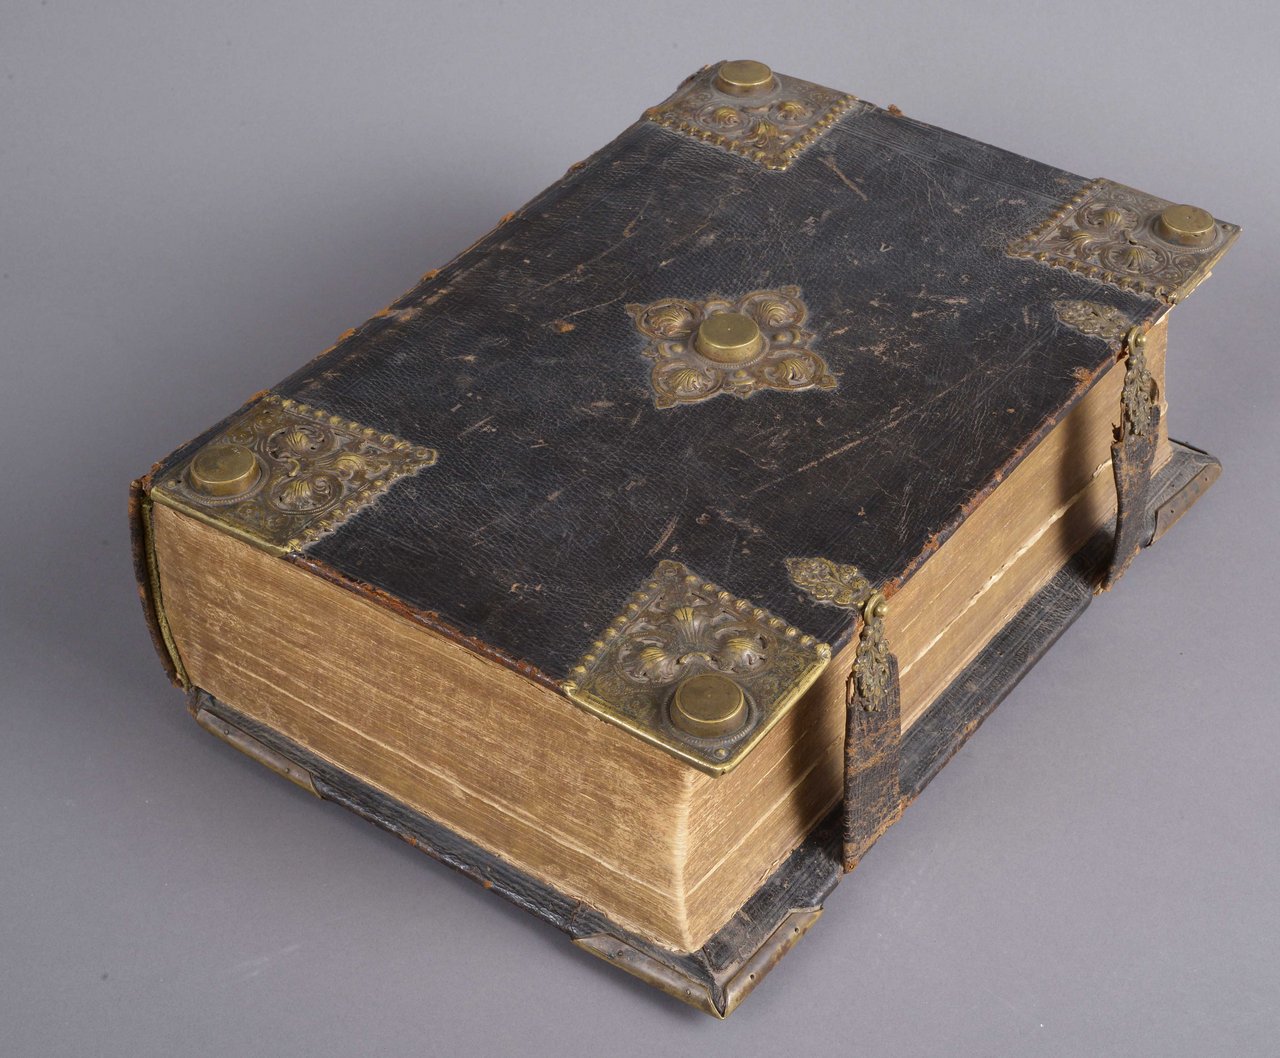 Johann Andreas Endtner, Biblia „Das ist Die gantze Heilige Schrifft verdeutscht Durch D. Martin Luther”, 1708